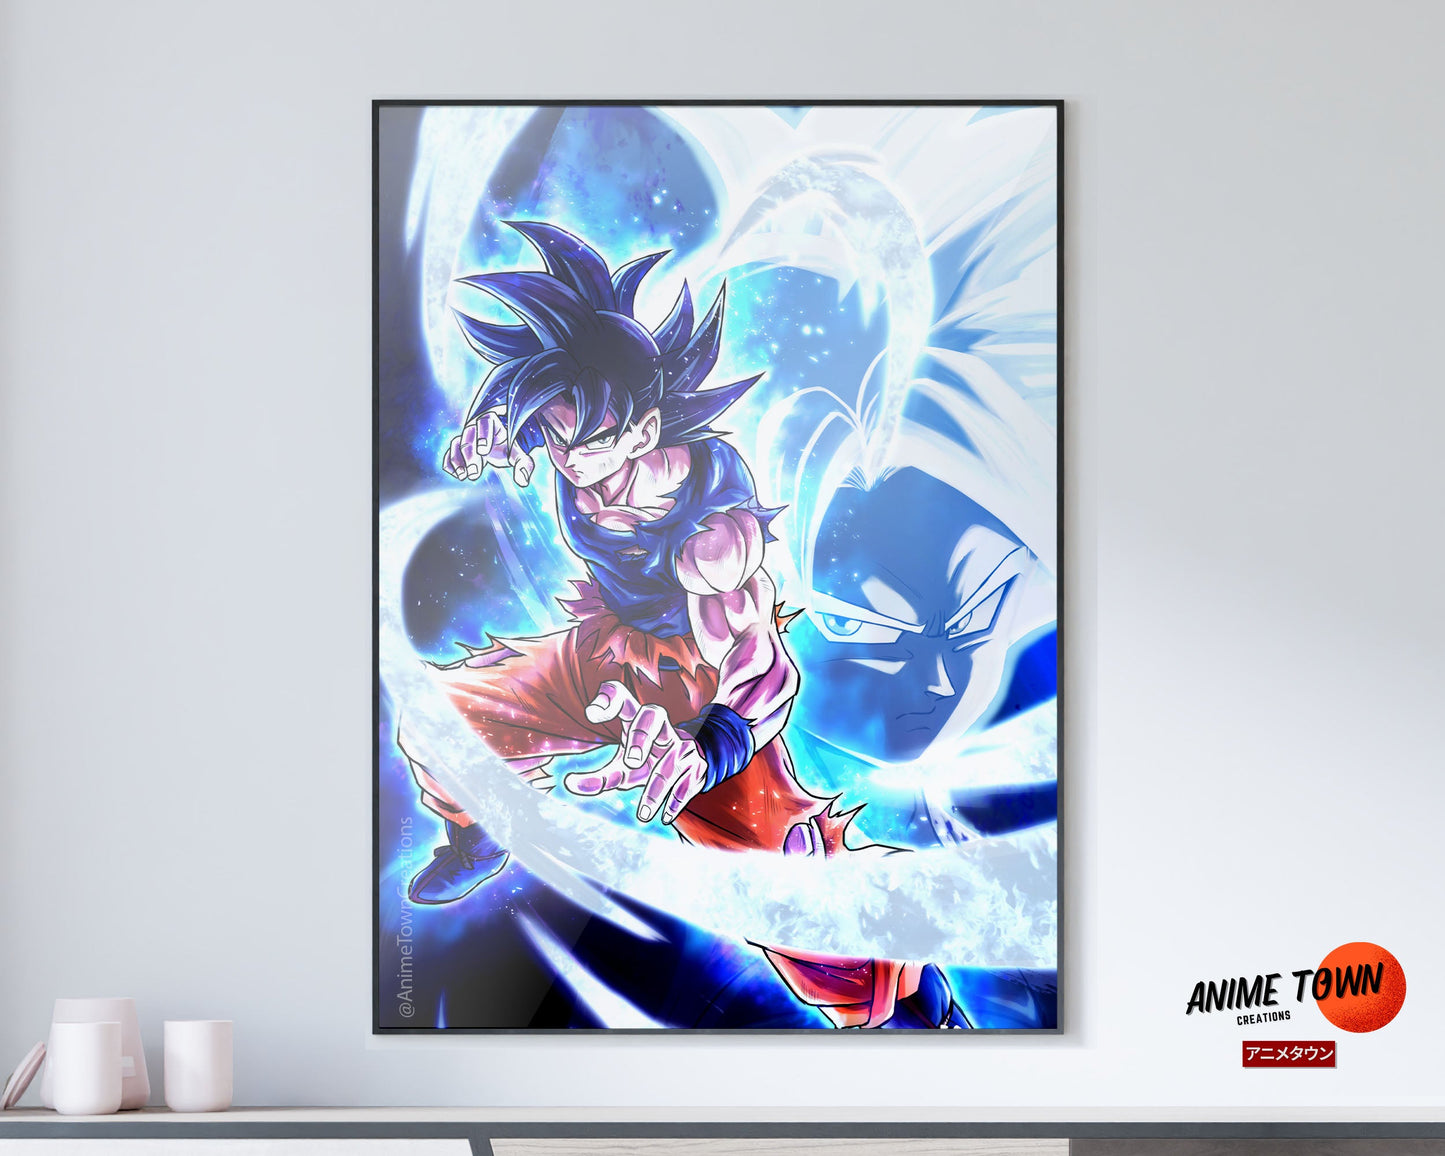 Anime Town Creations Poster Dragon Ball Super Saiyan Ultra Instinct 5" x 7" Home Goods - Anime Dragon Ball Poster